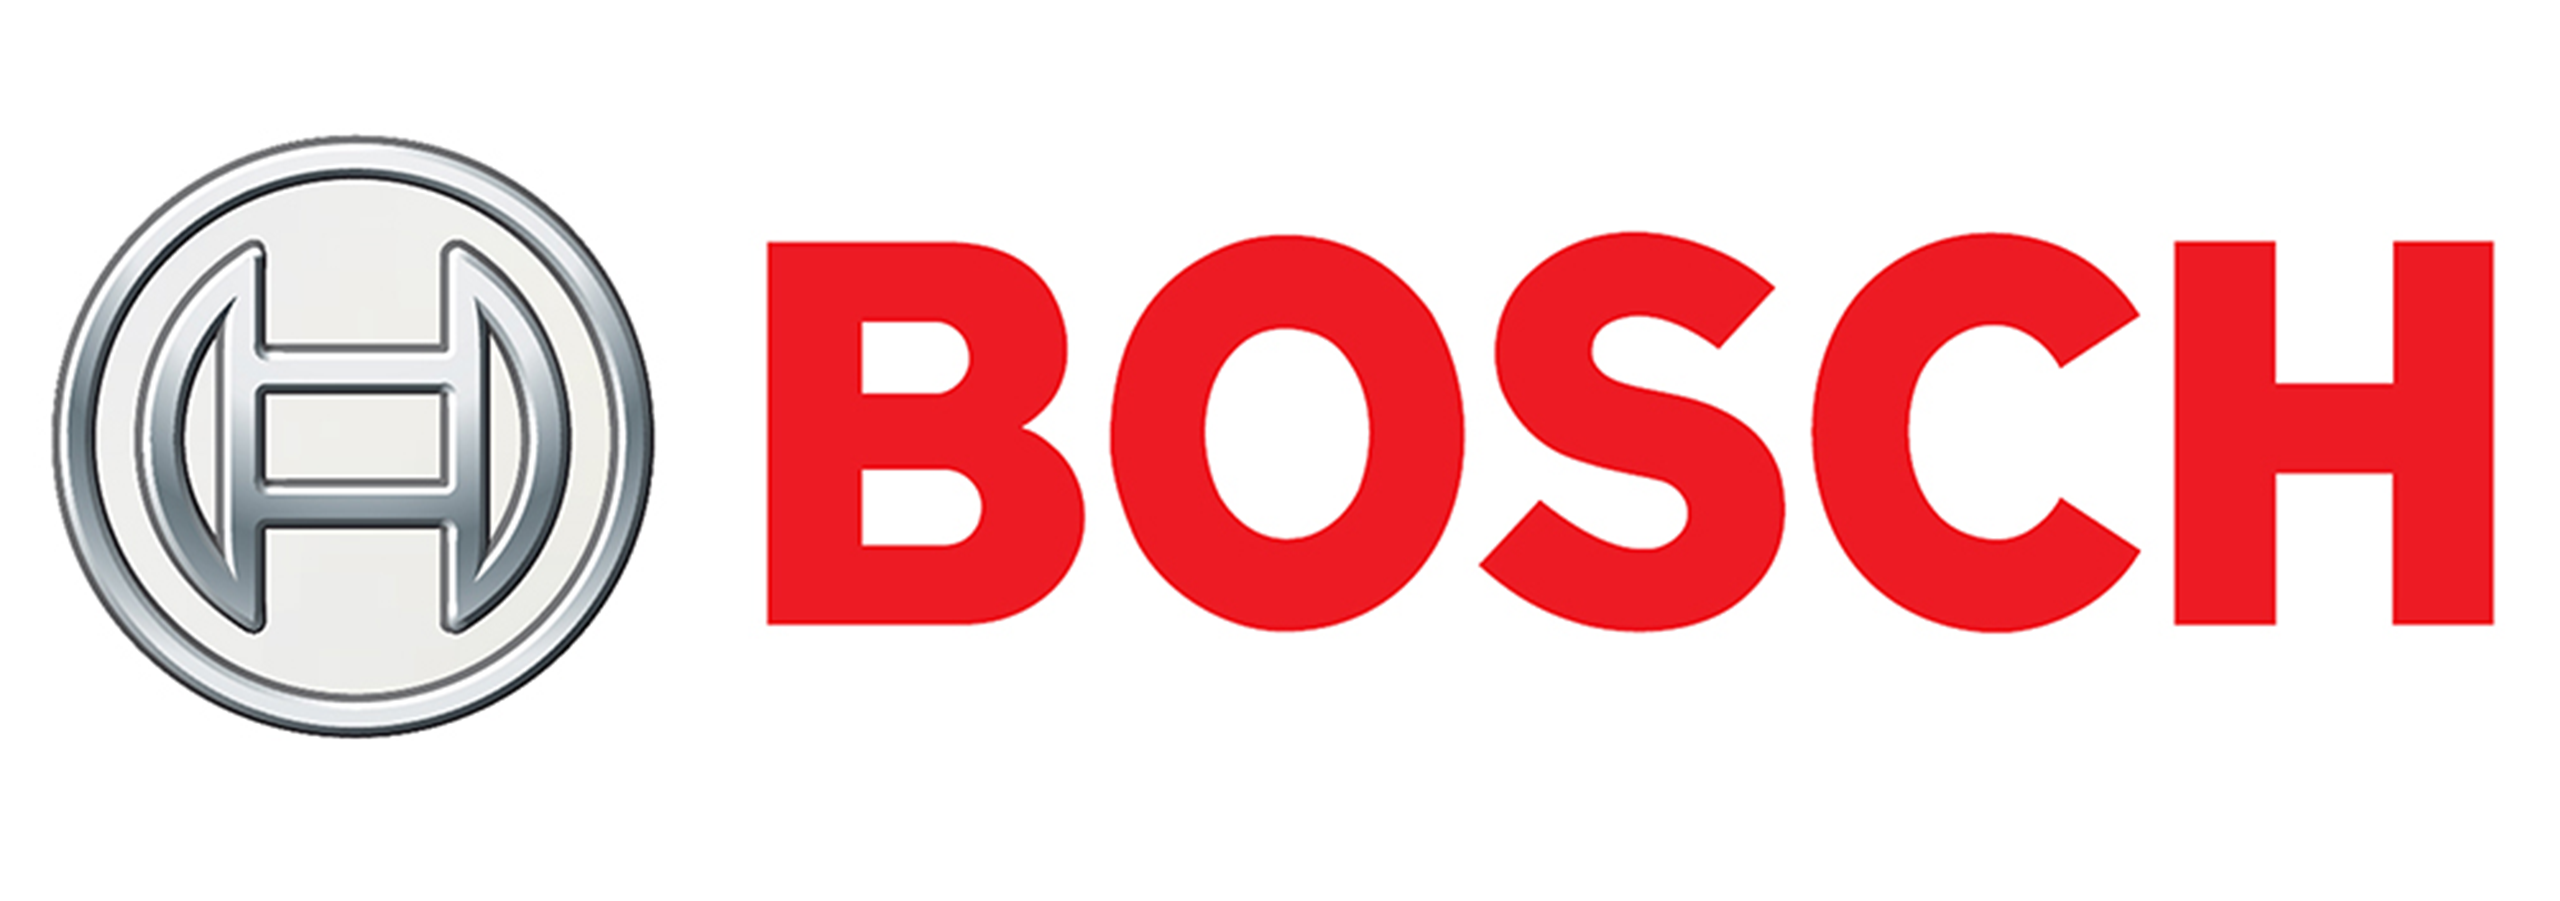 Bosch - Thương hiệu dẫn đầu xu thế công nghệ